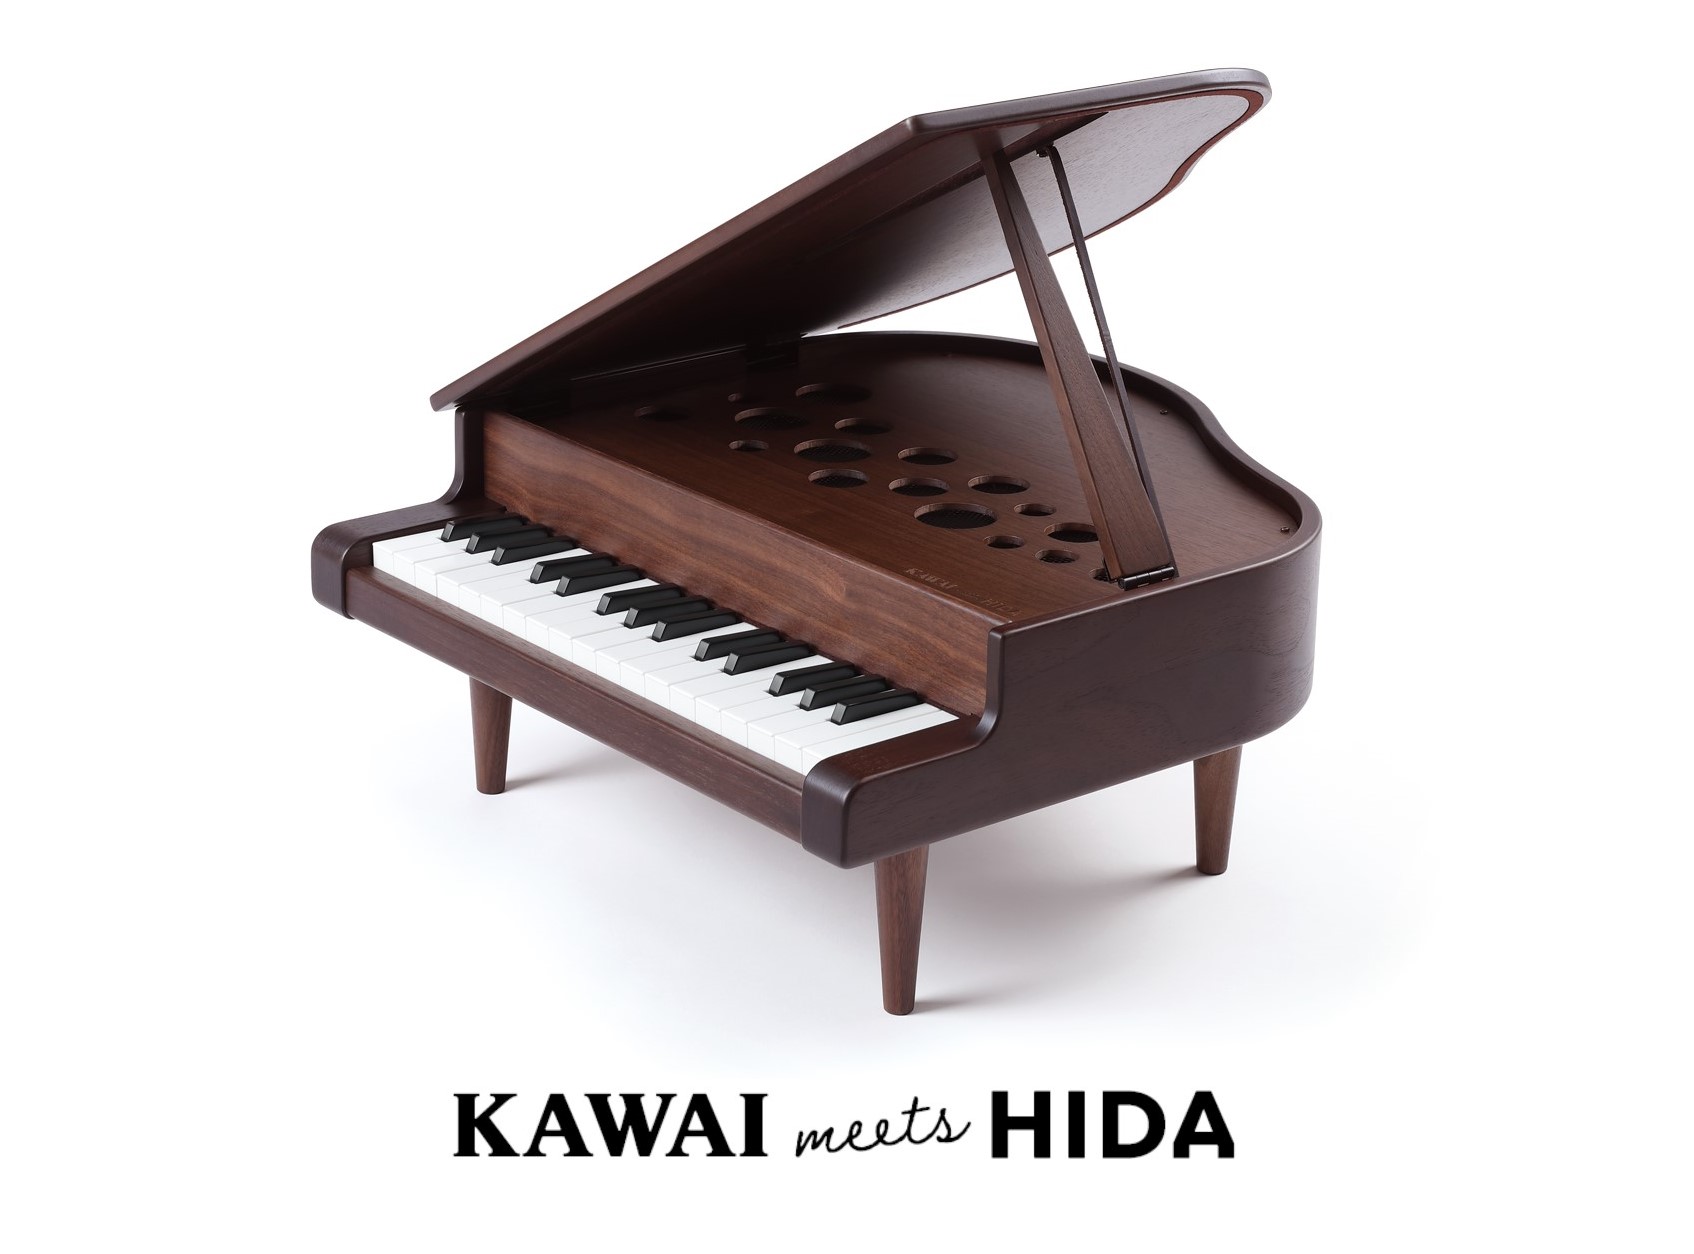 KAWAI グランドピアノ ブラック 1141 本体サイズ:425×450×205 mm(脚